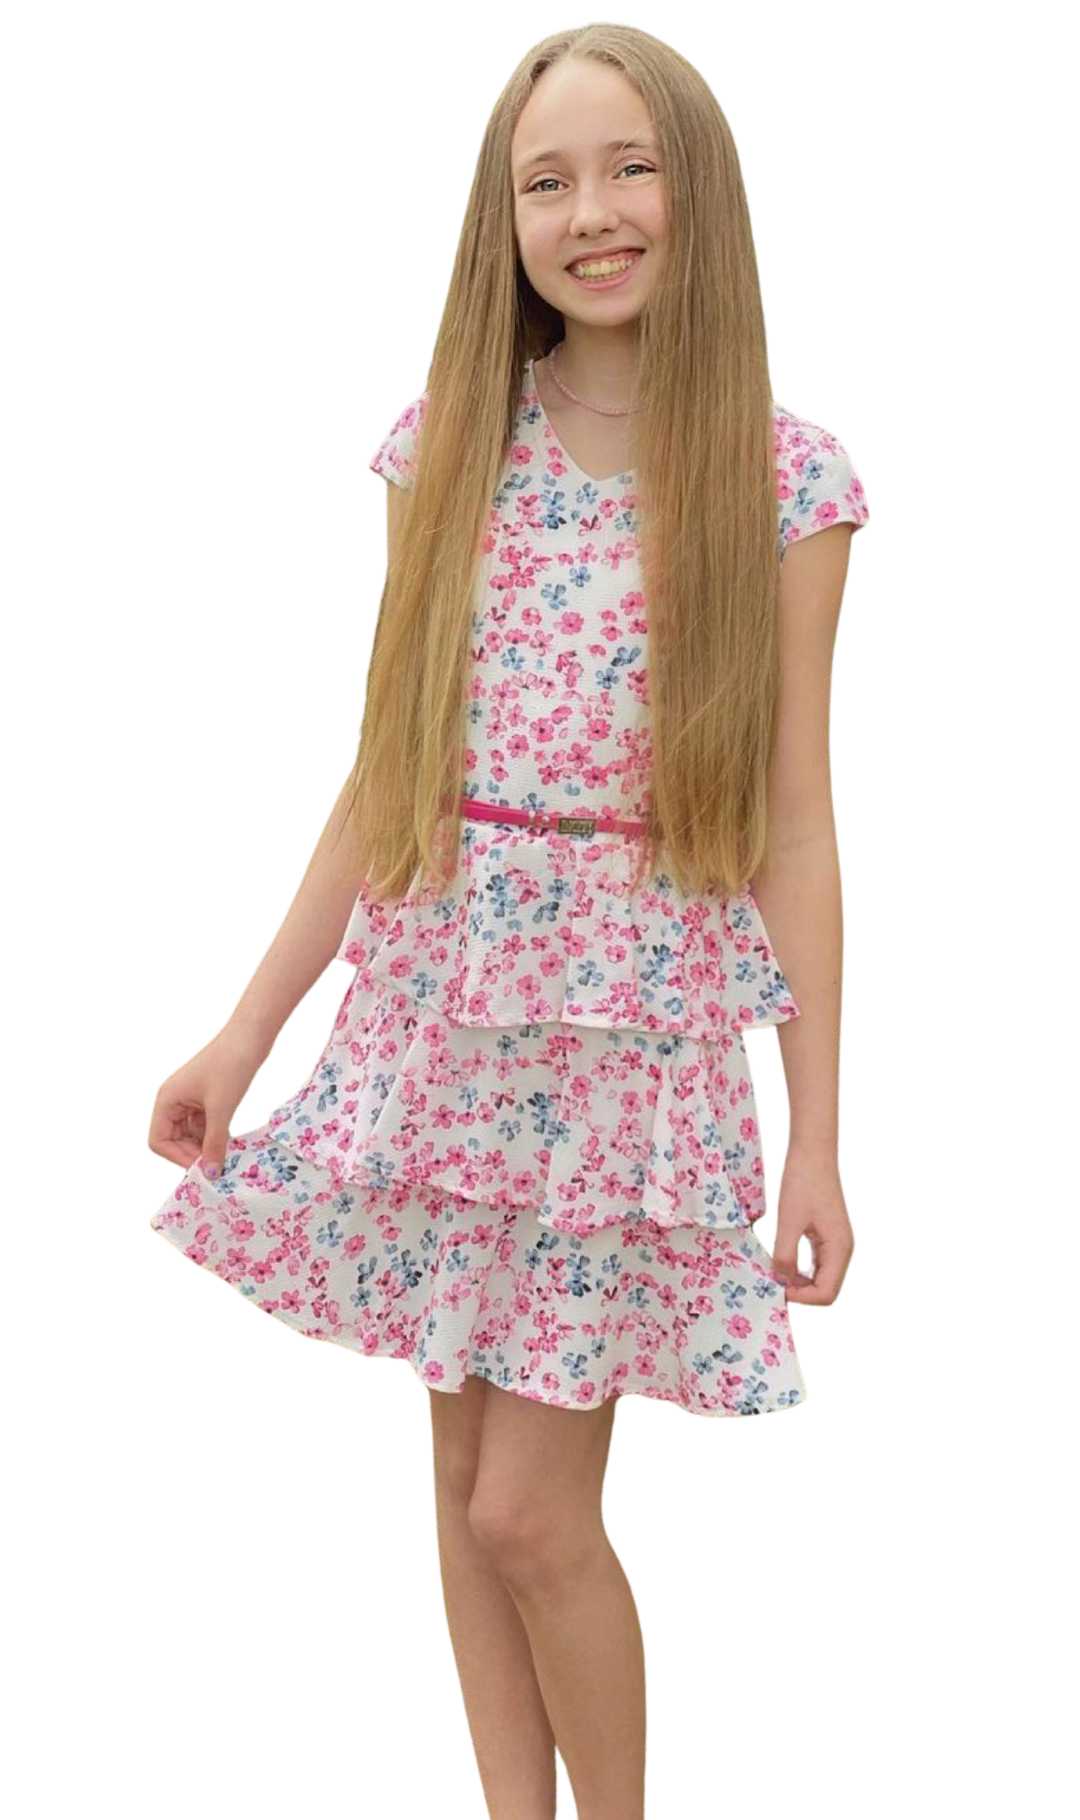 Kids Size 7 To Women|girls' Summer Chiffon Dress | Sleeveless Ruffled  Knee-length Floral Dress